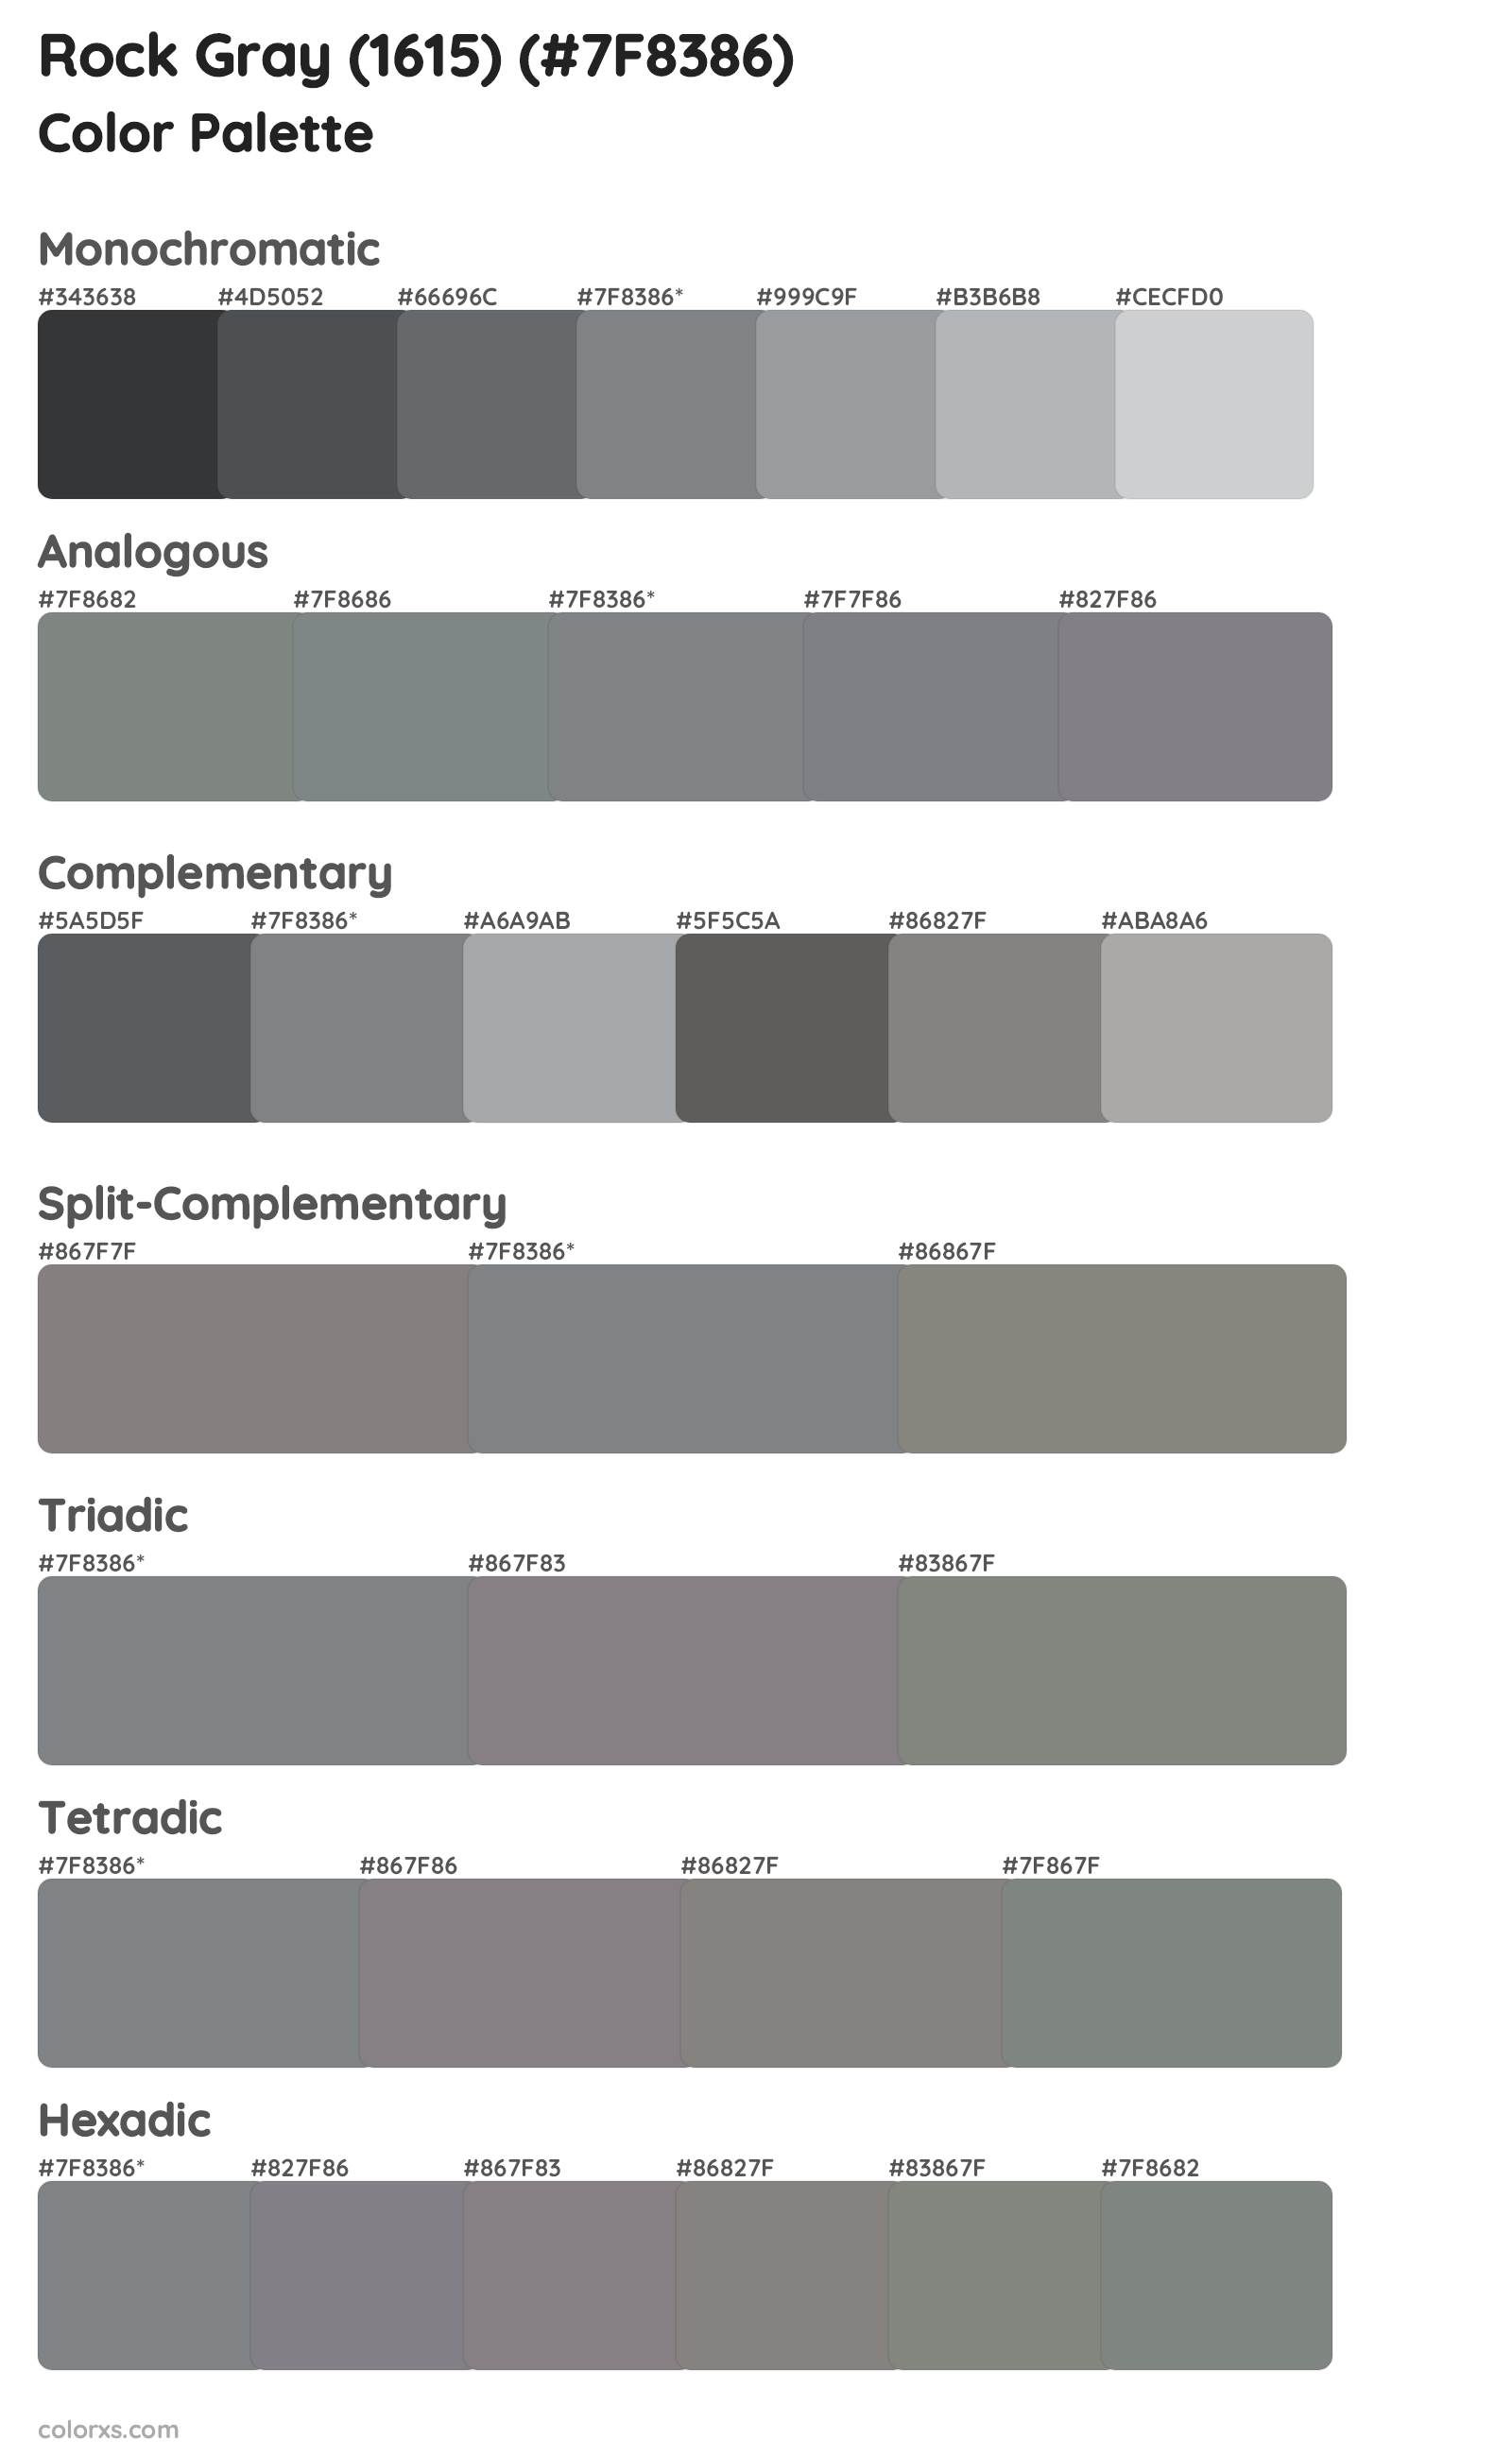 Rock Gray (1615) Color Scheme Palettes